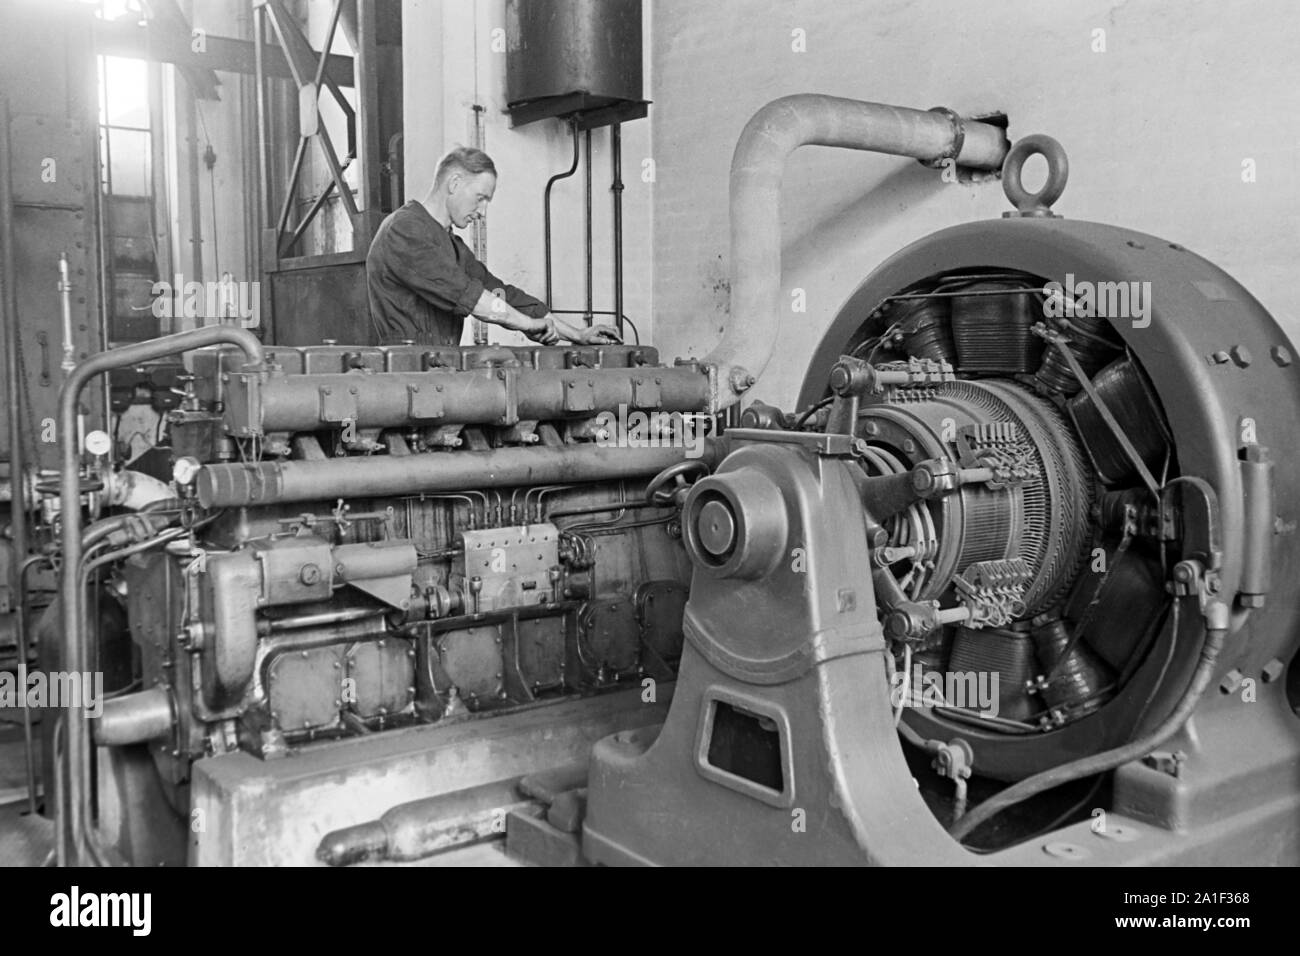 Motoren treiben der Maschinen der Konservenfabrik C. Th. Lampe in Braunschweig an, Deutschland 1939. Engines keeping running the machines at the canning factory C. Th. Lampe in Brunswick, Germany 1939. Stock Photo